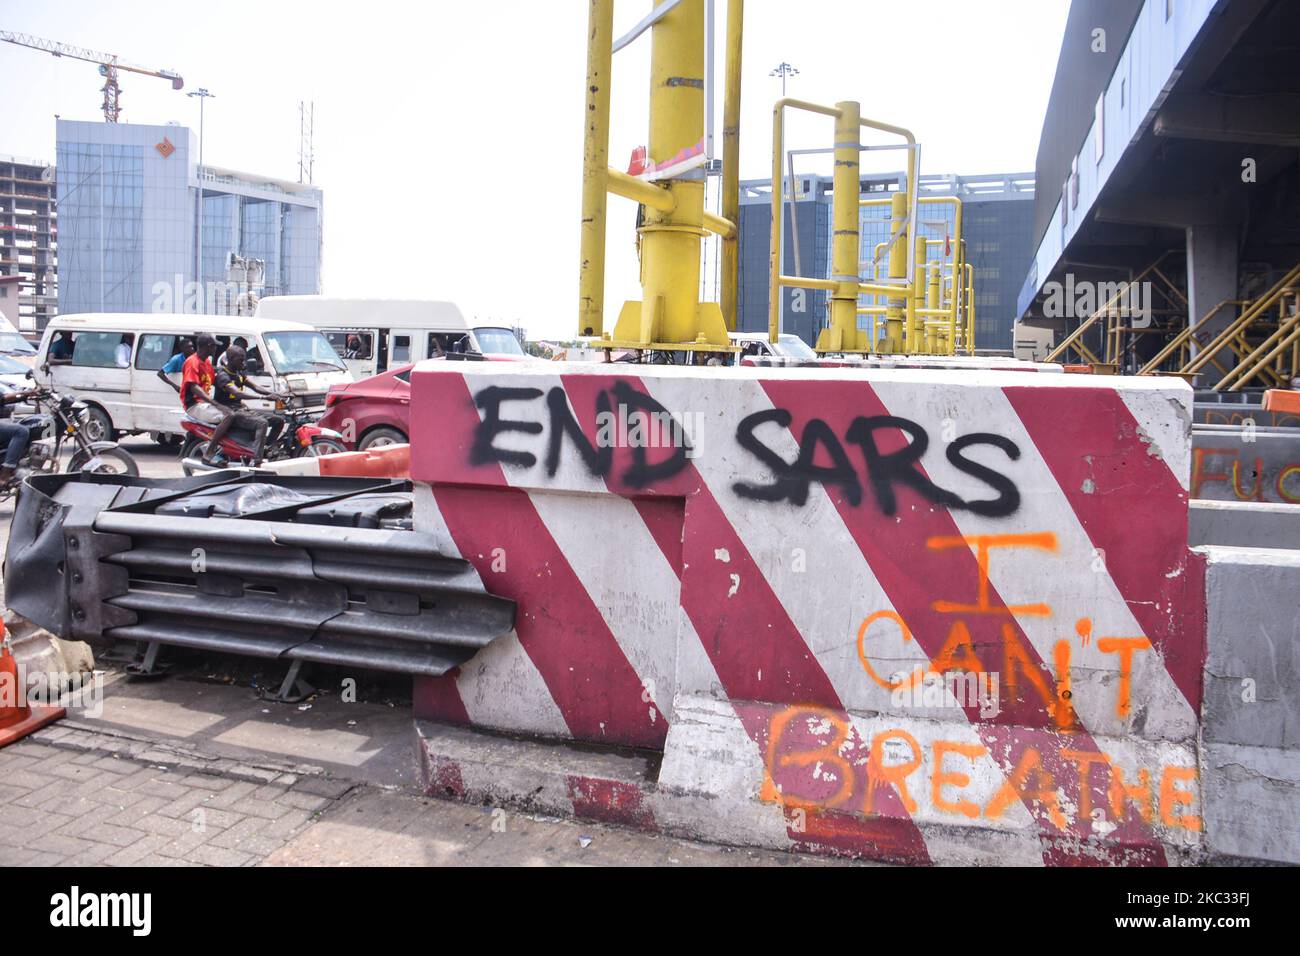 Ein Graffiti schreibt auf einer Barrikade (END SARS I CANT BREATHE) am Mauttor von Lekki, als das Untersuchungsgremium von Lagos am 30. Oktober 2020 das Mauttor von Lekki besucht, um dort eine Inspektion zu machen und weitere Erkenntnisse über die Schießerei am 20. Oktober 2020 zu erhalten. Anhörung der von der Regierung des Staates Lagos eingeräumten Justizbehörde für Untersuchung und Rückgabe von Vorwürfen von Brutalität und Hochhändigkeit durch Mitarbeiter der aufgelöstem Spezial-Anti-Raub-Kader (SARS), Das Panel besucht die Szene zur Inspektion und um weitere Erkenntnisse über die Schießerei vom Oktober zu erhalten Stockfoto